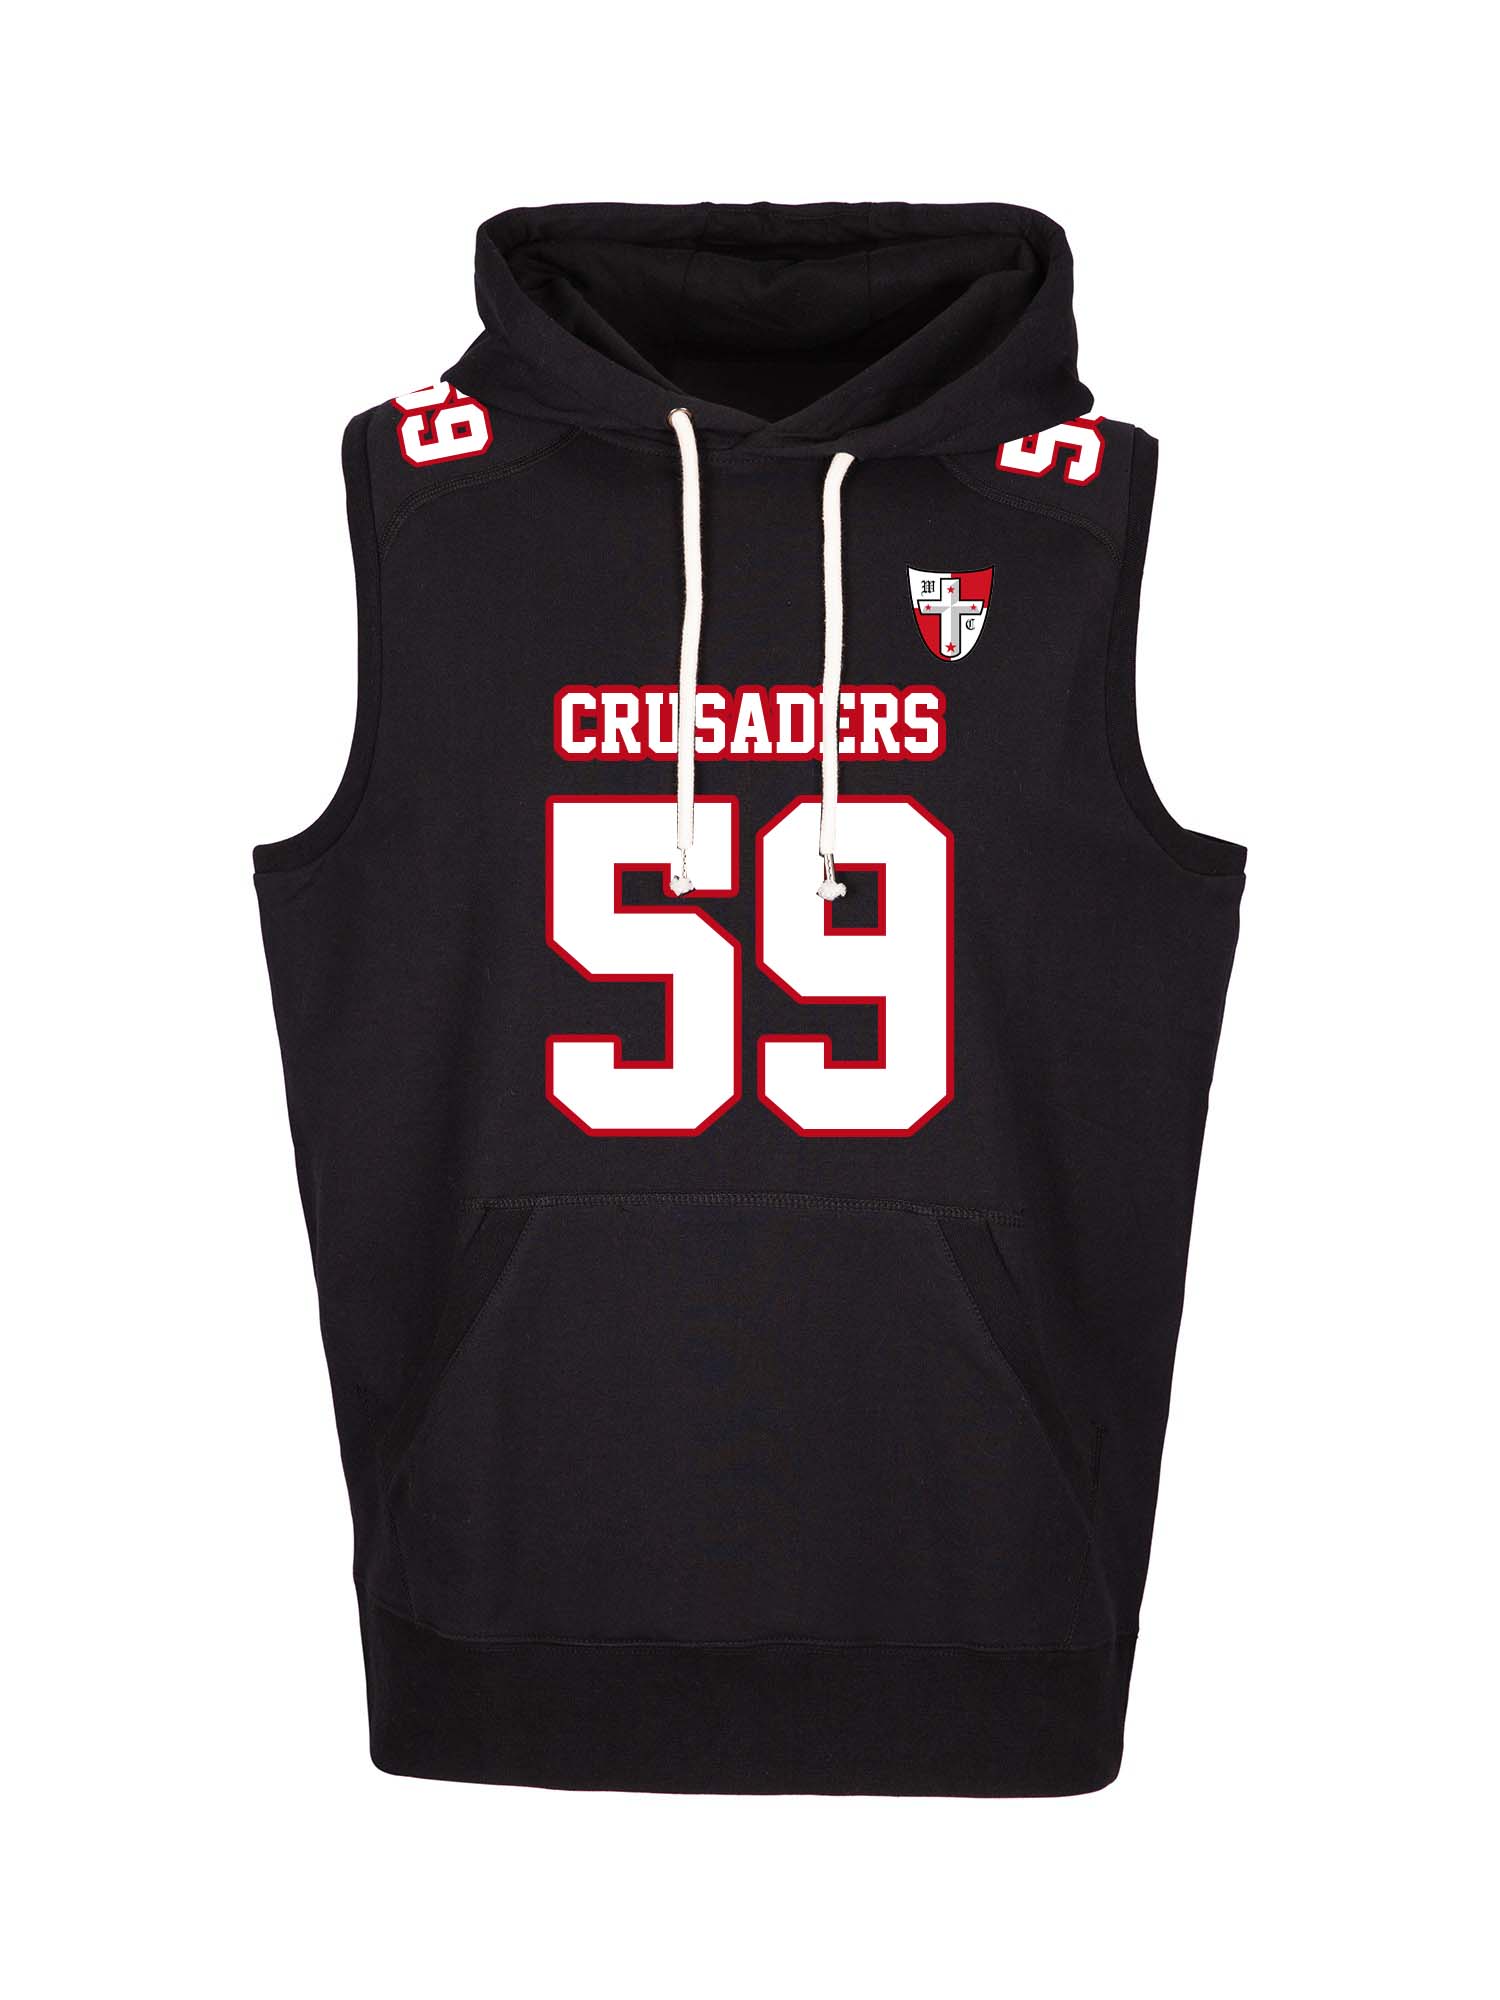 Crusaders sleeveless hoodie